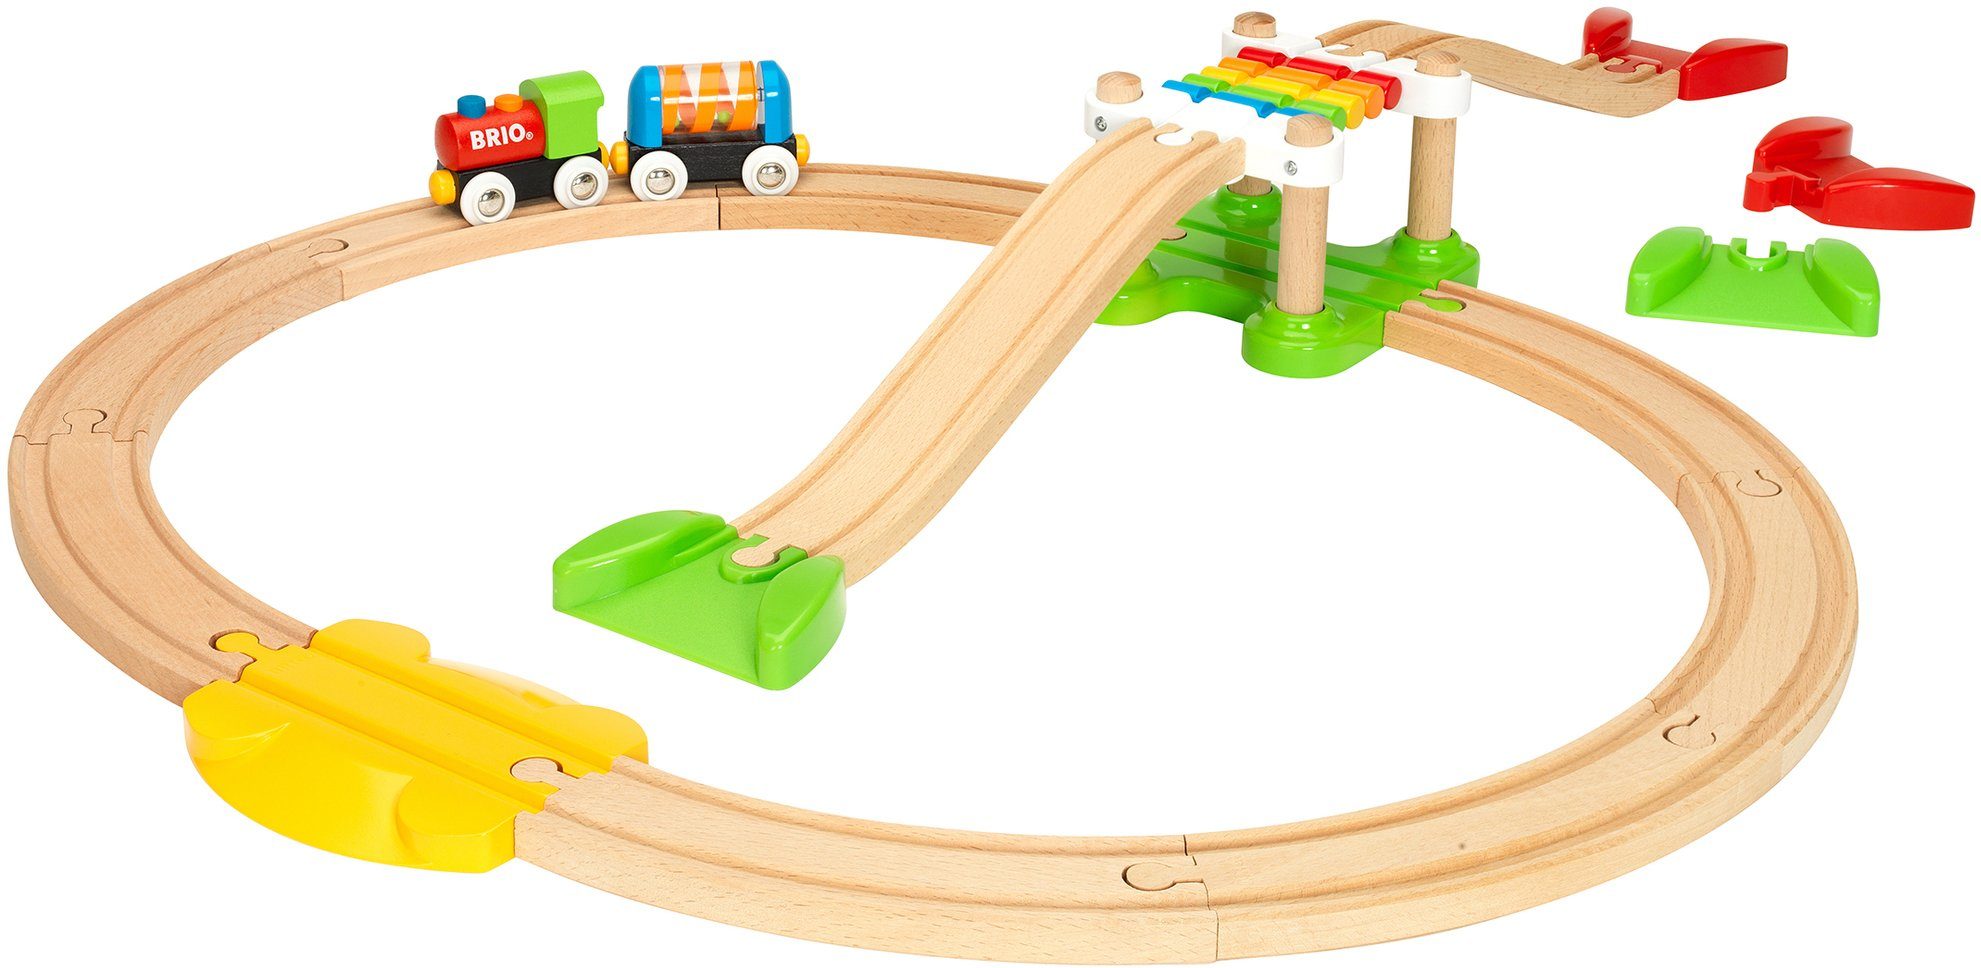 Image of BRIO - Mein erstes BRIO Bahn Spiel Set